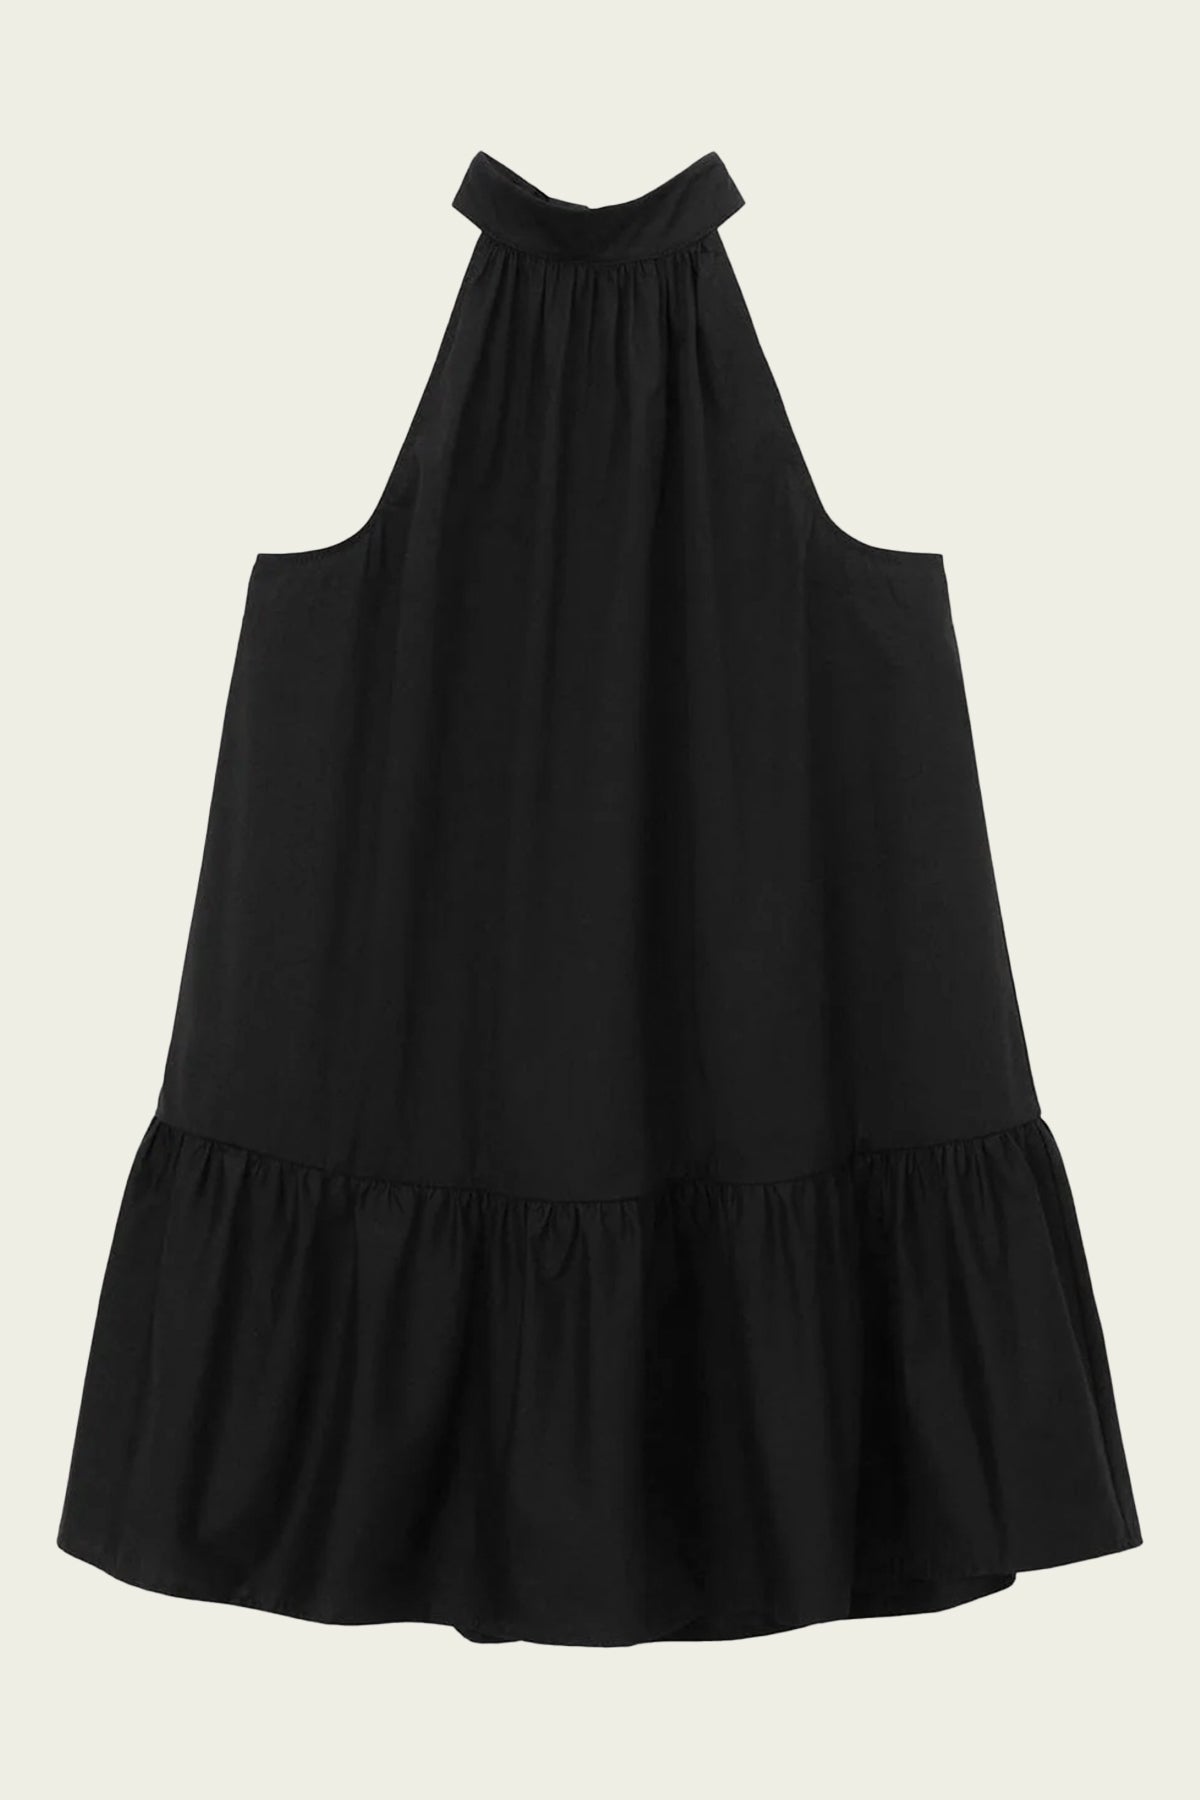 Mini Marlowe Dress in Black - shop-olivia.com